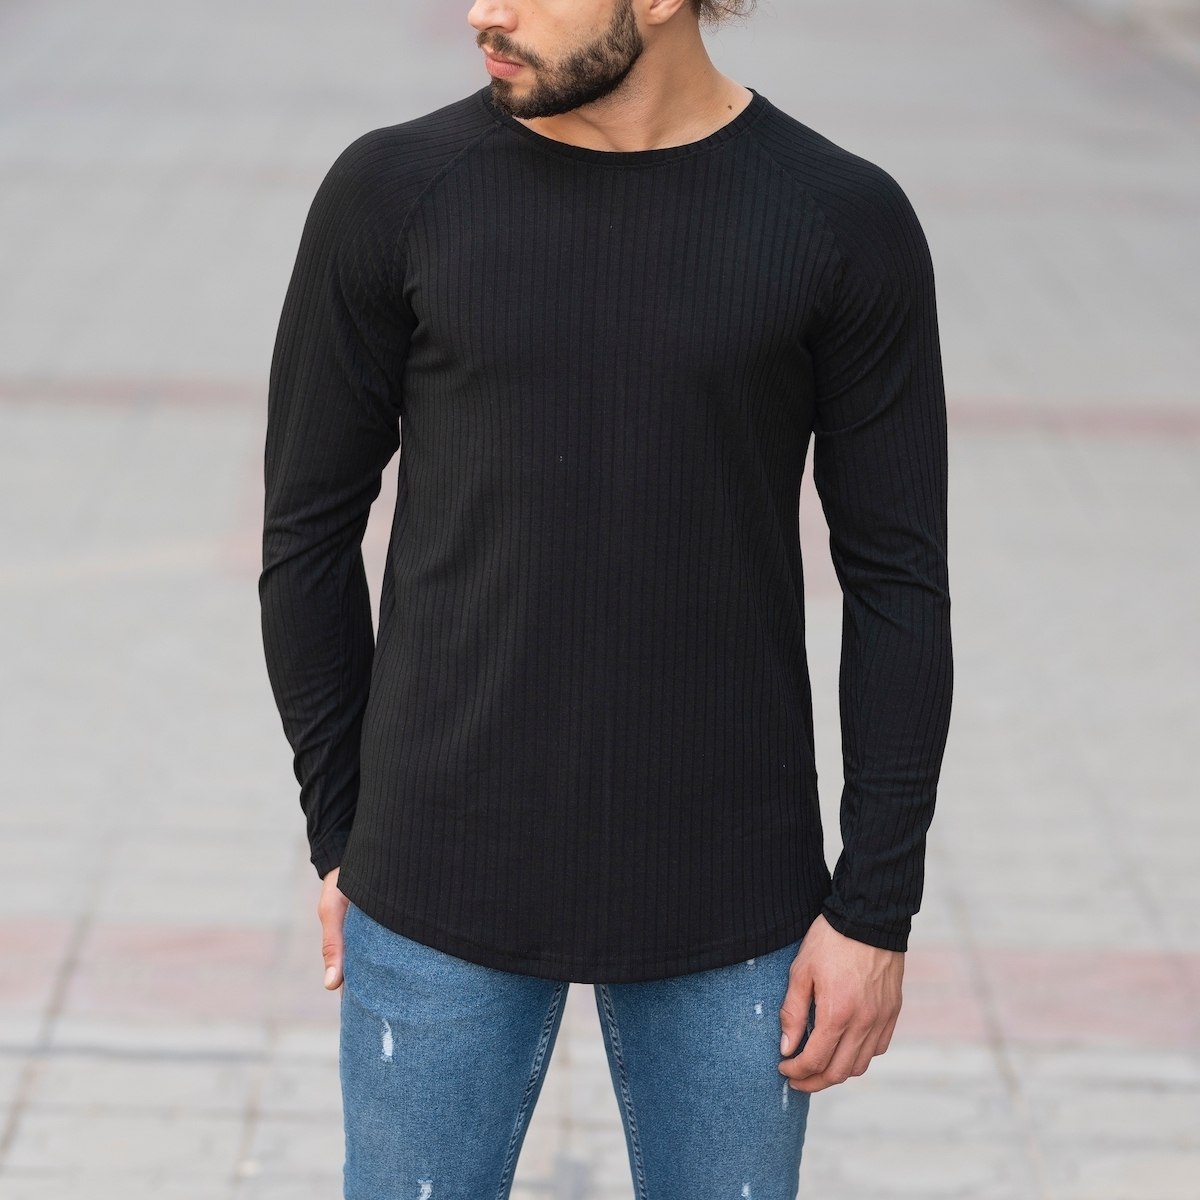 Black Sweatshirt With Stripe Details - 1